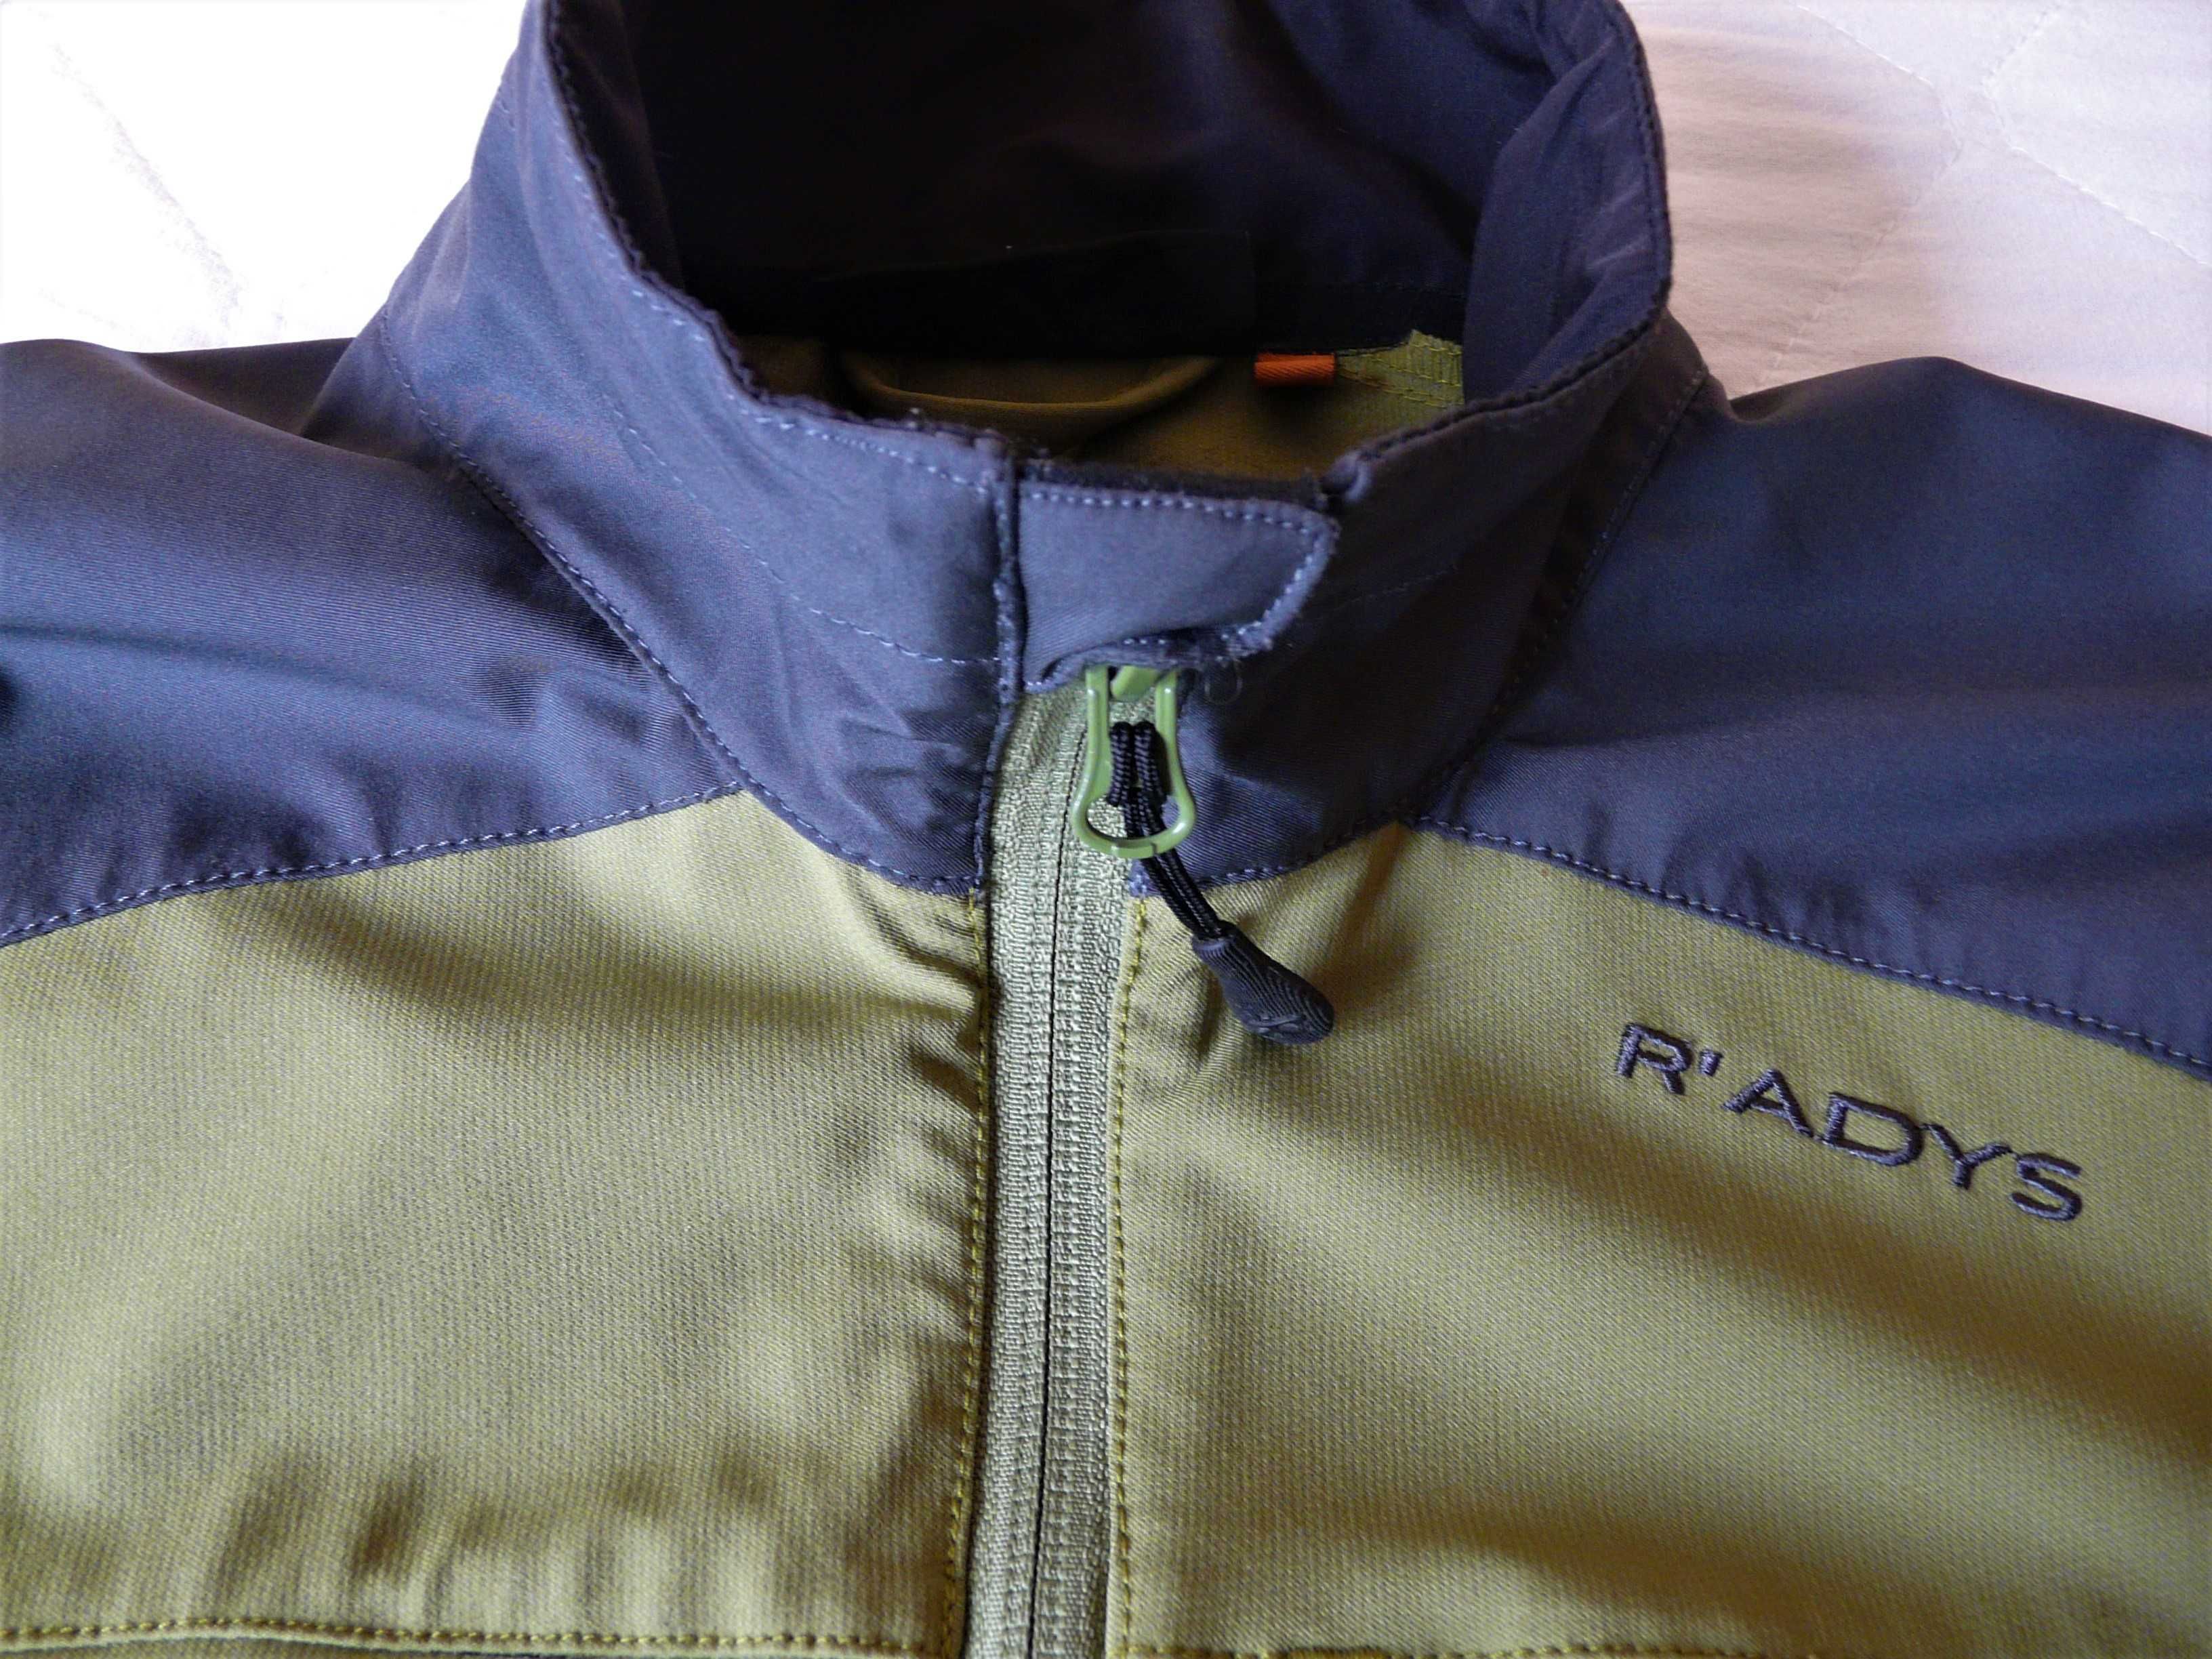 Софтшельная куртка Radys